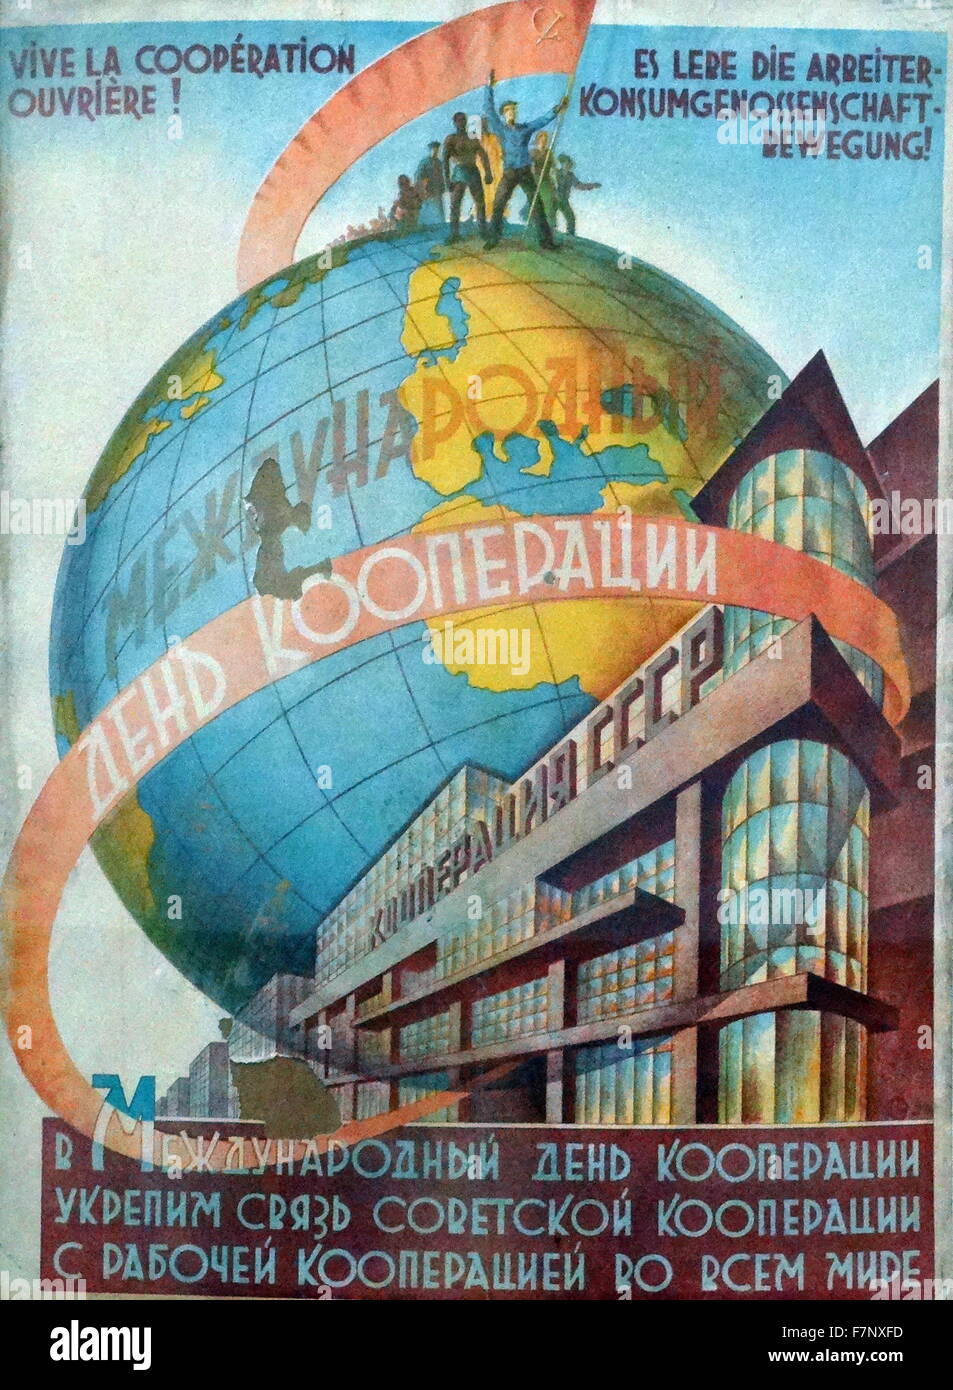 Russo, sovietici, la propaganda comunista poster, Evviva i lavoratori! Rafforzare la cooperazione comunista con le Repubbliche di cooperative; in tutto il mondo Foto Stock